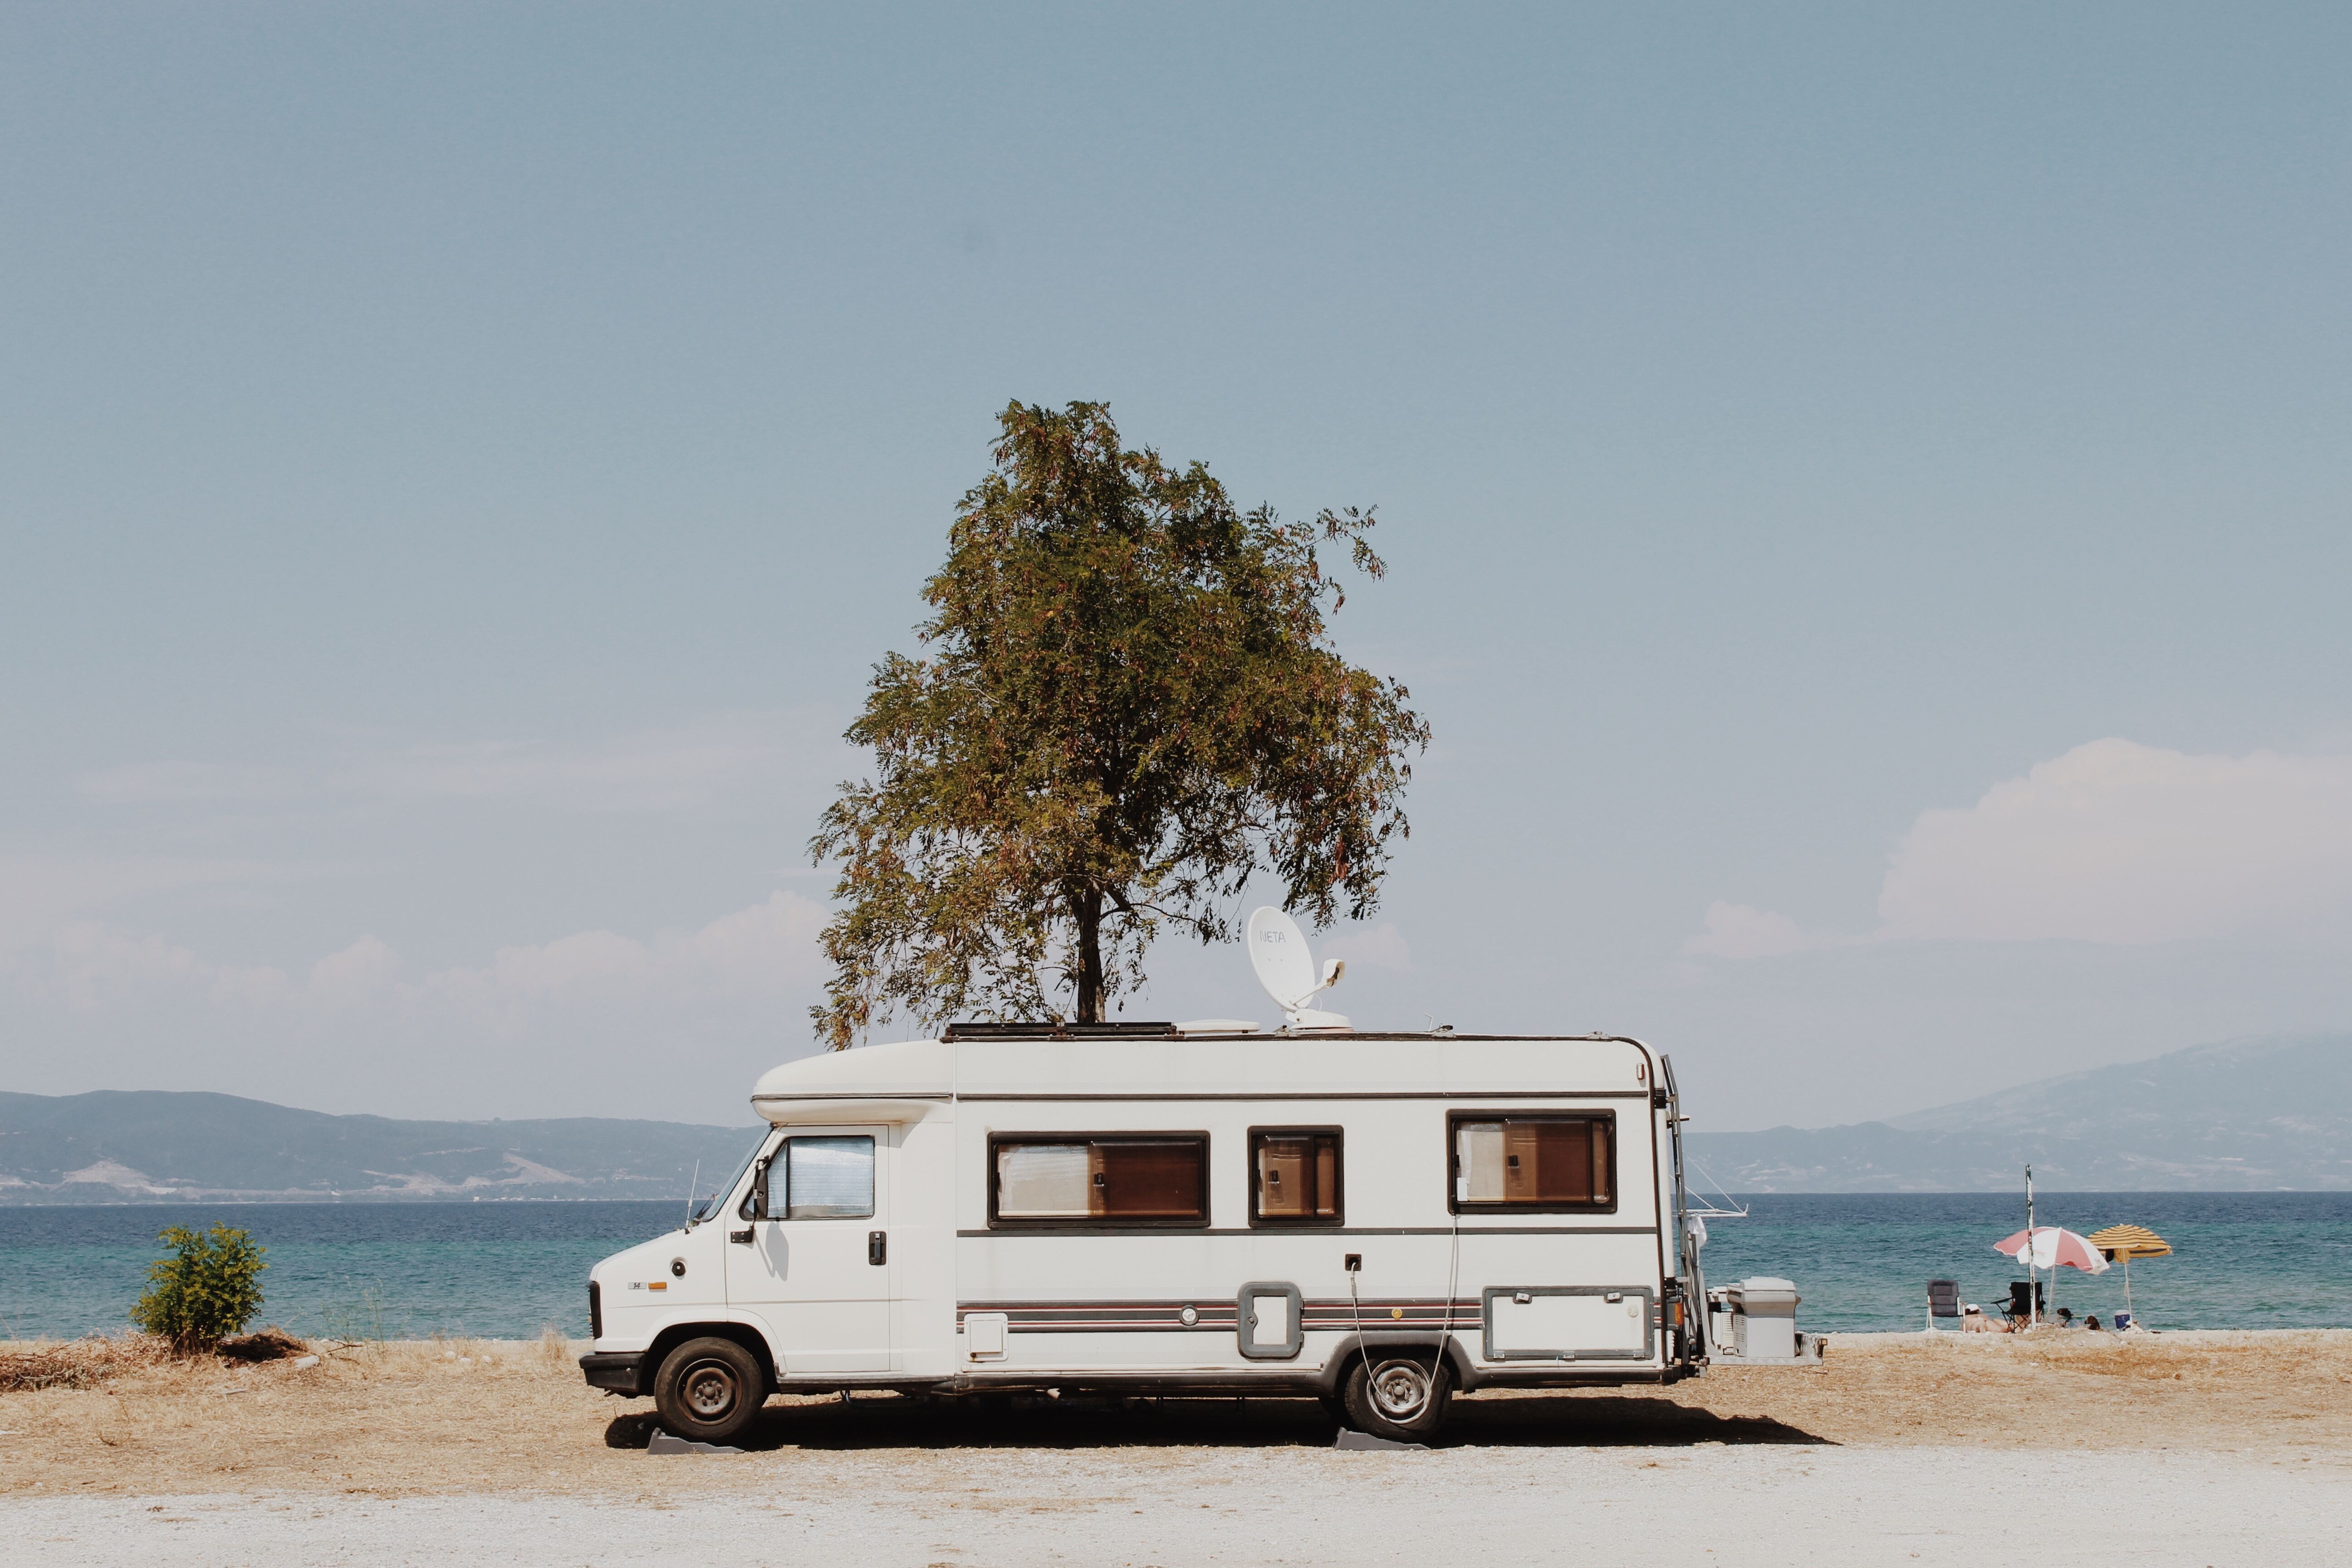 Vacances en camping-car : à quoi faut-il penser ?
